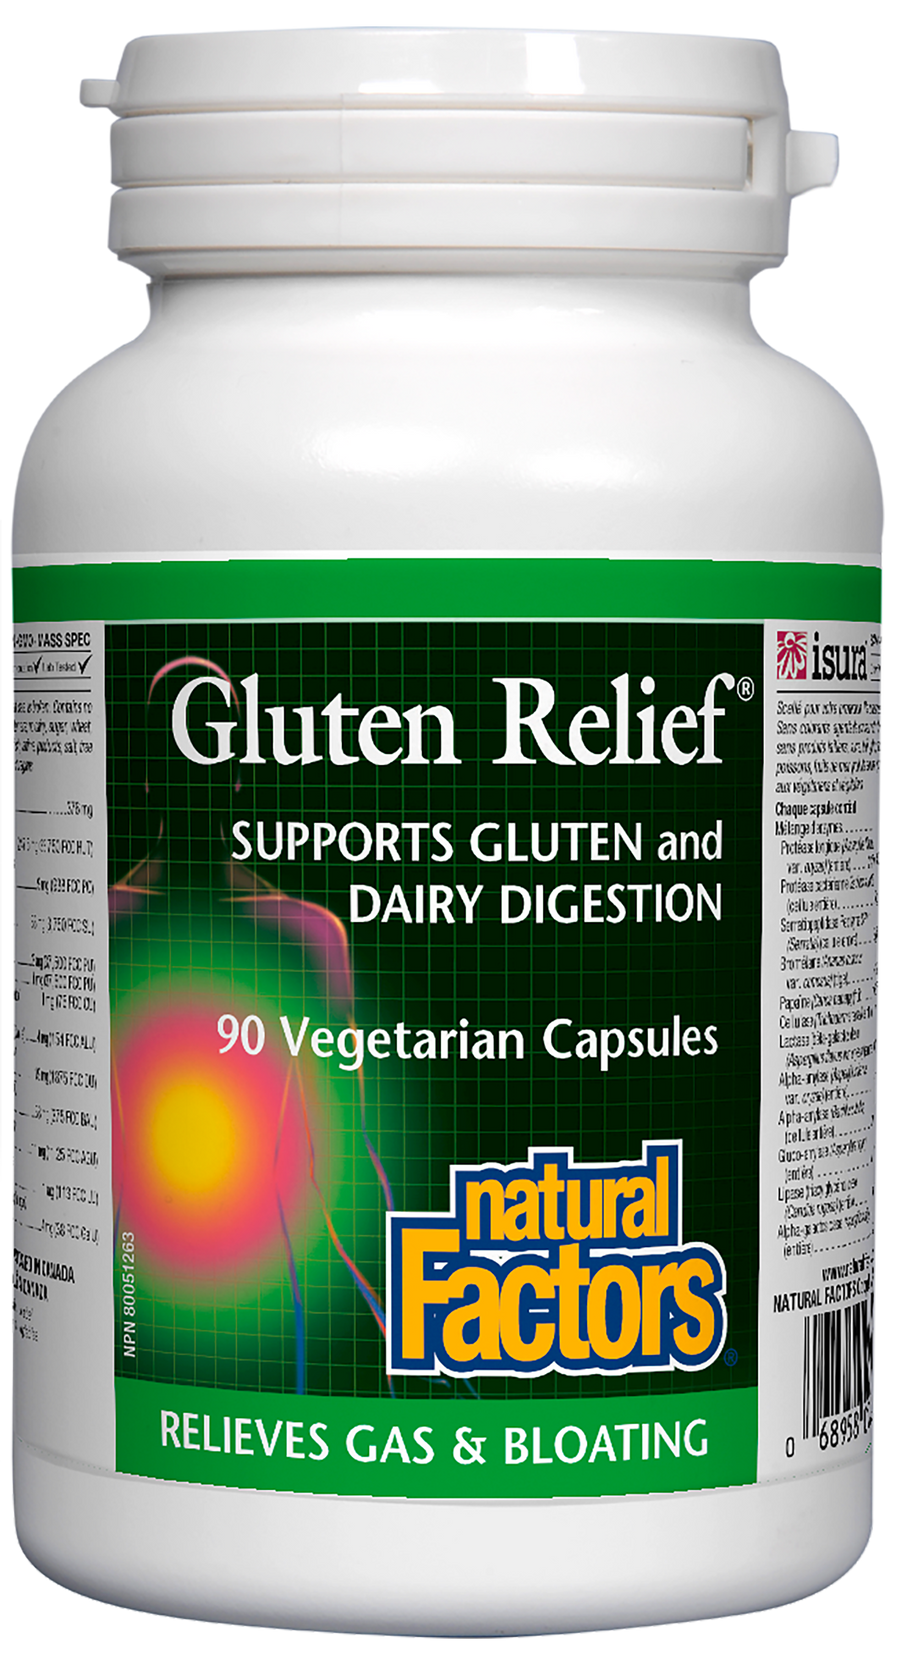 Natural Factors Gluten Relief 90 Veg. Capsules